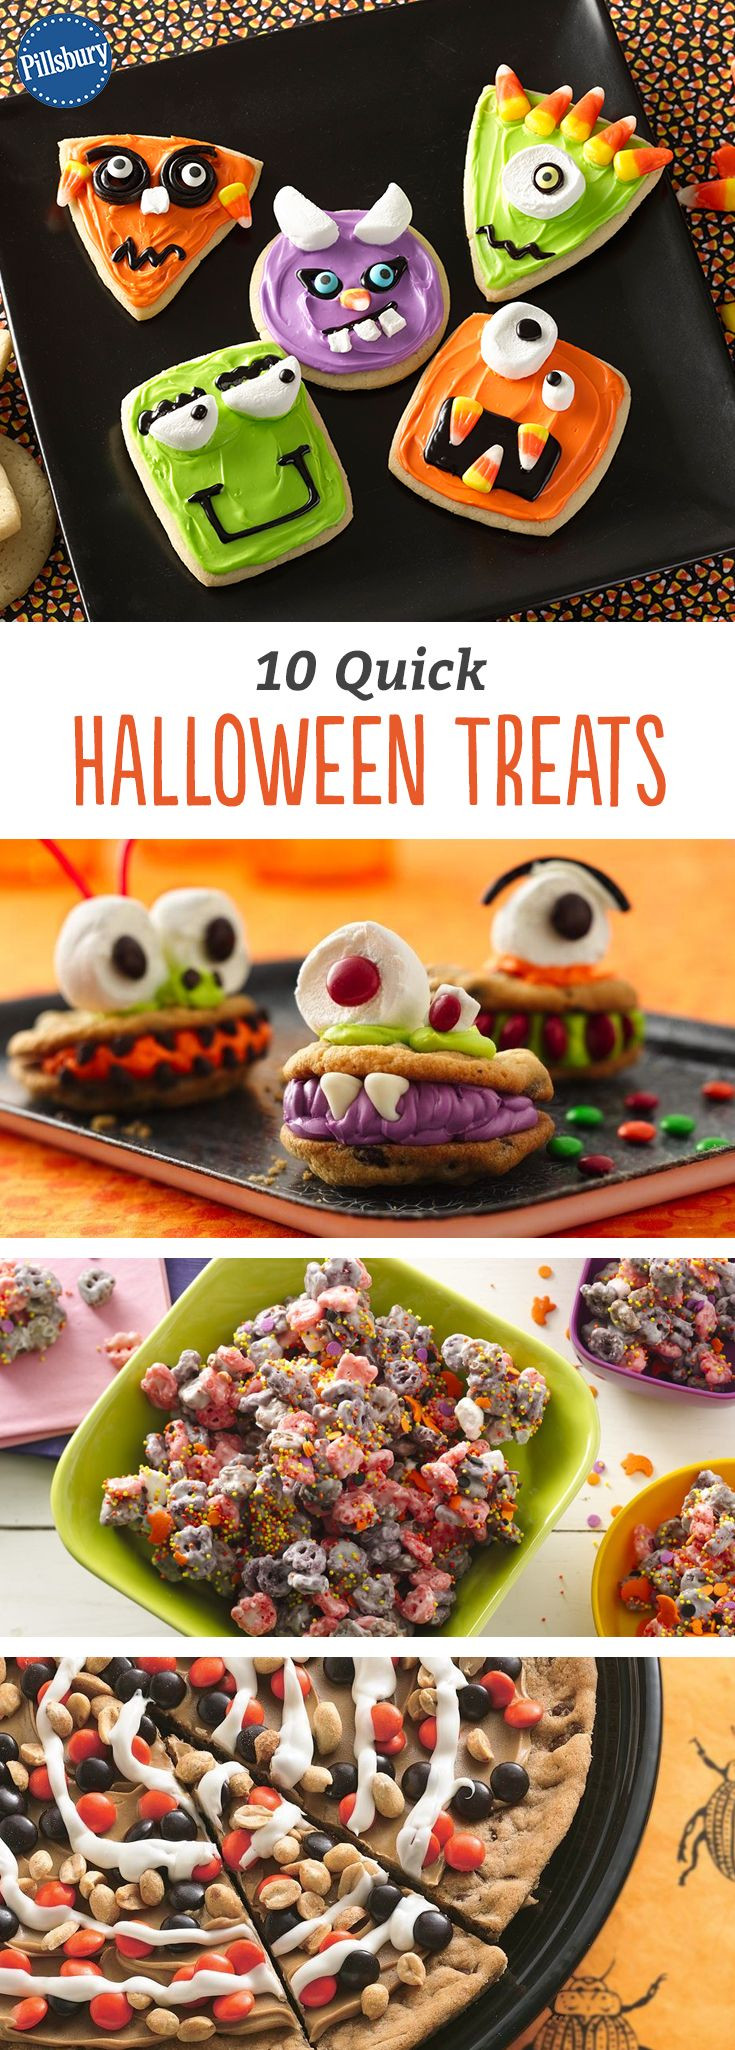 Quick Halloween Desserts
 10 Quick Halloween Treats